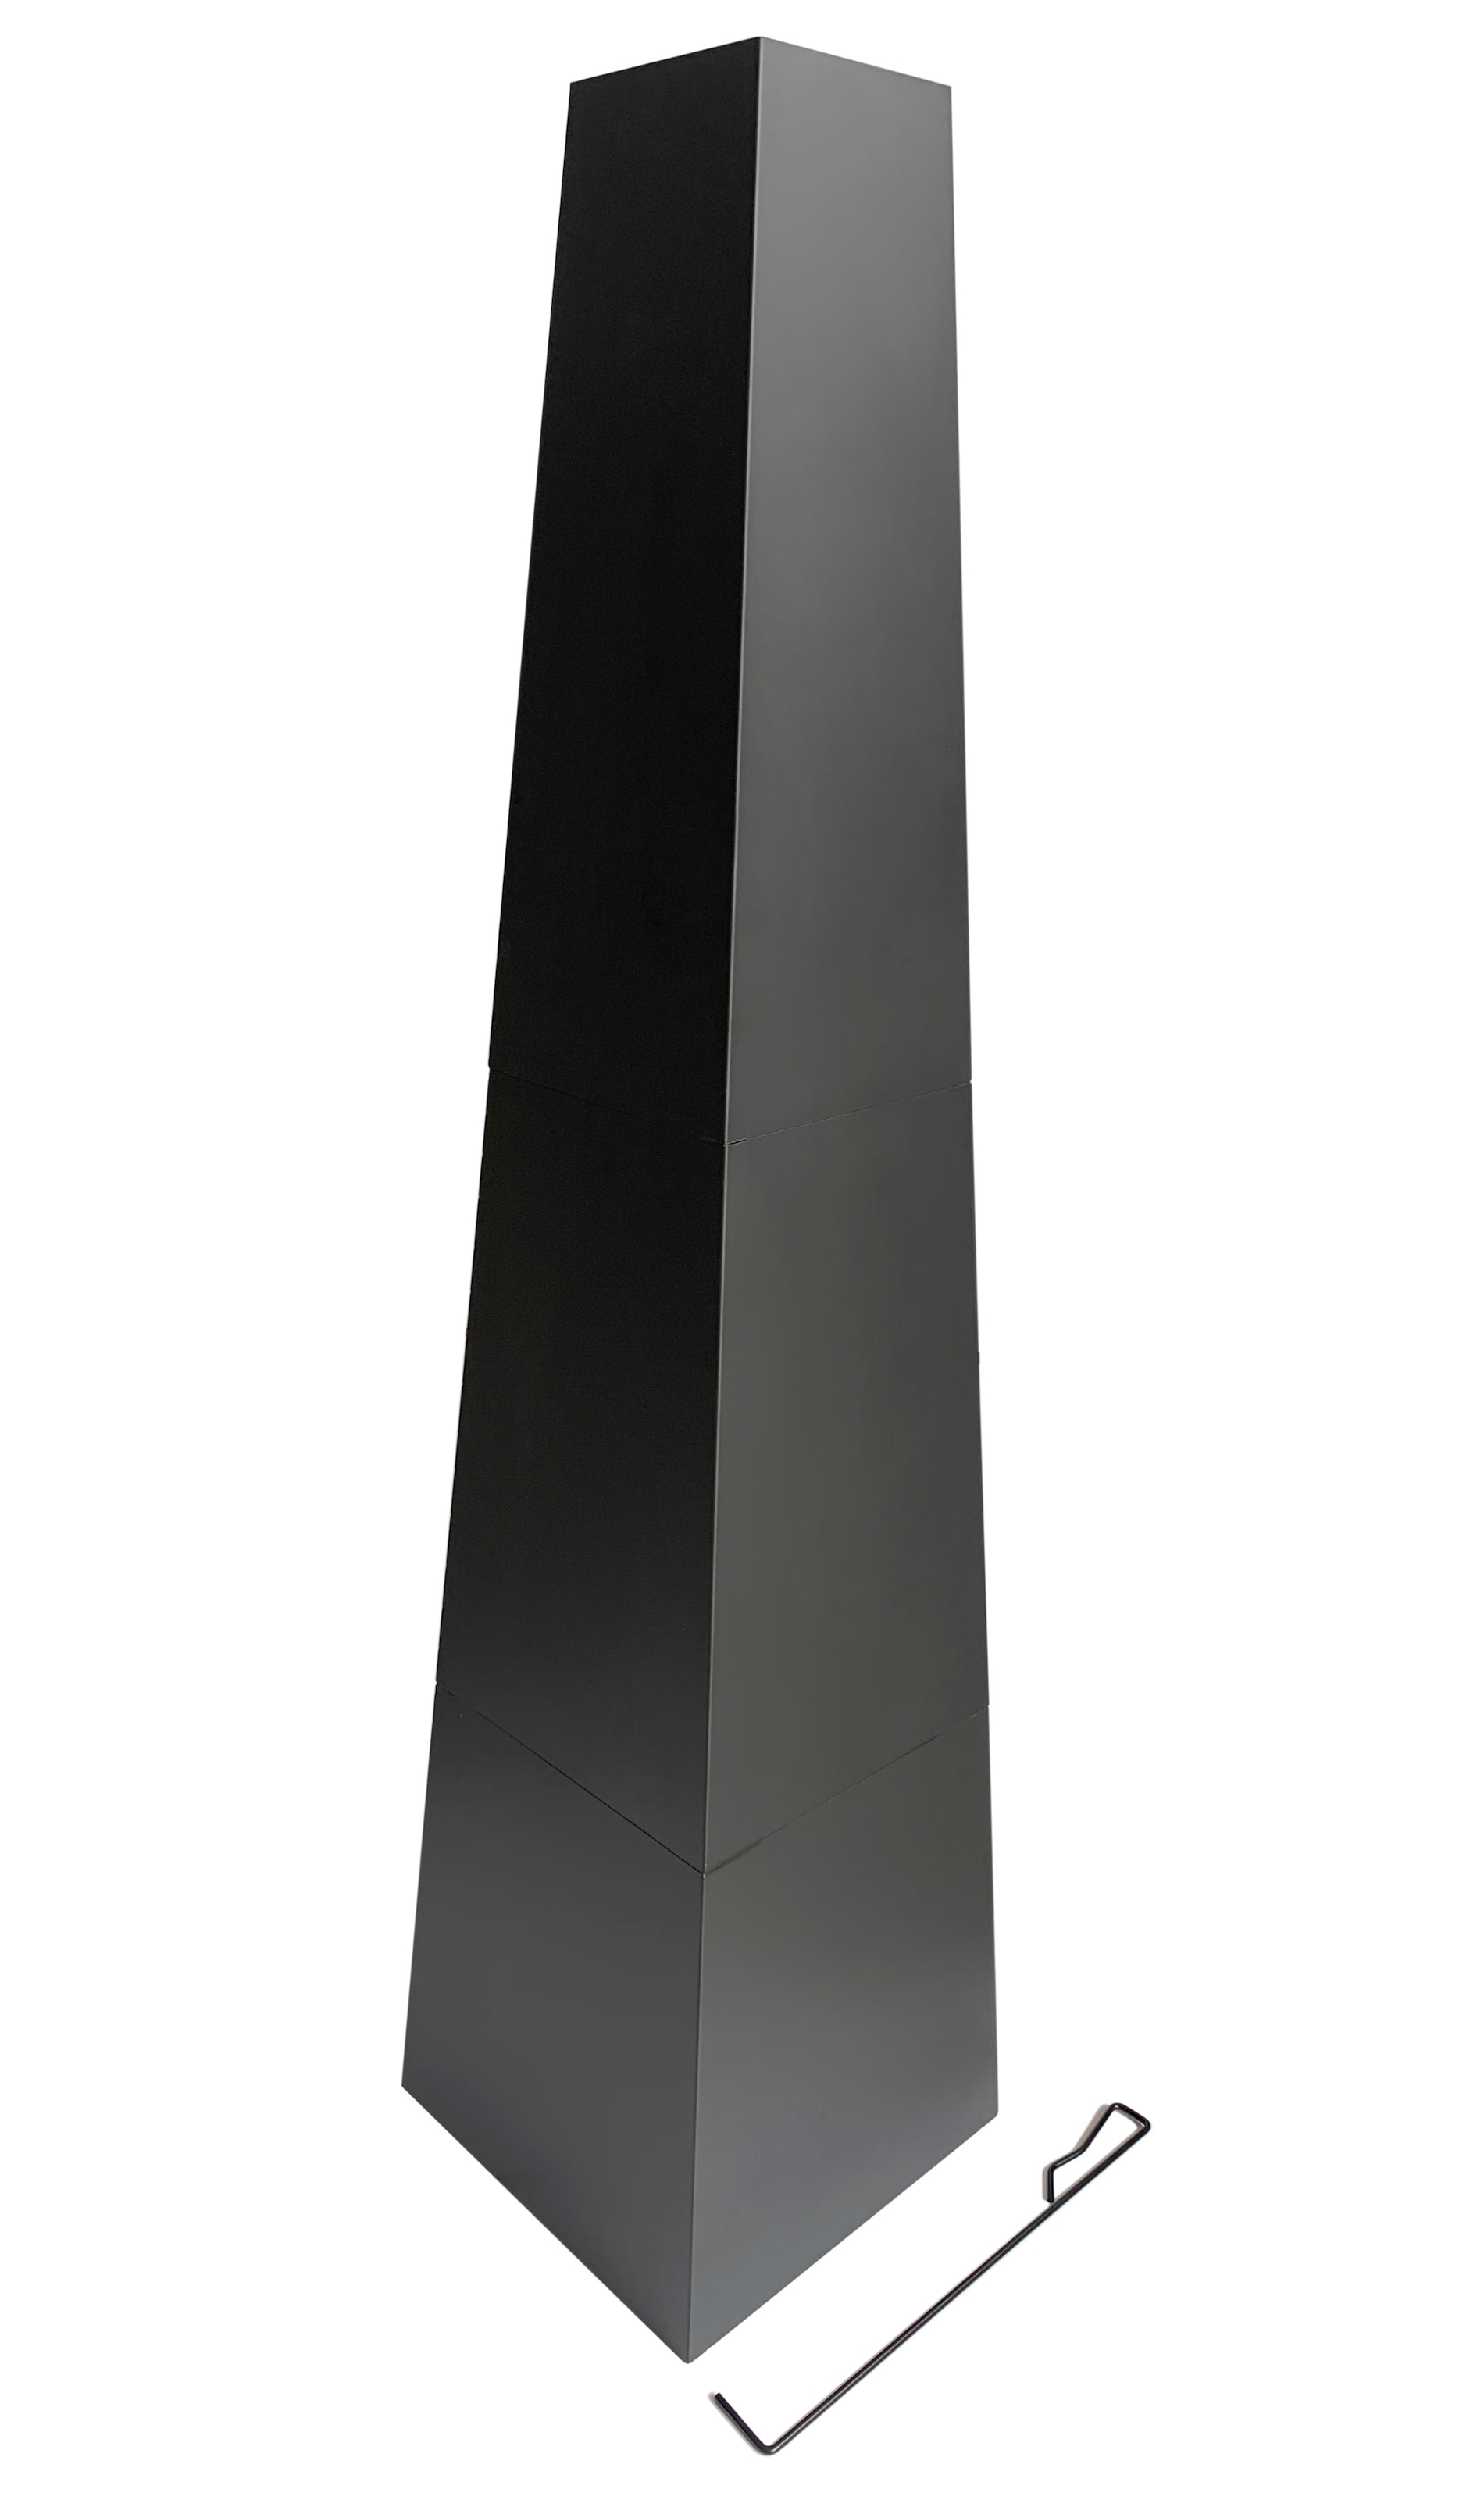 Tepro Feuerstelle »Bainbridge«, Pyramidenkamin mit Brennholzregal, BxLxH: 36x36x150 cm